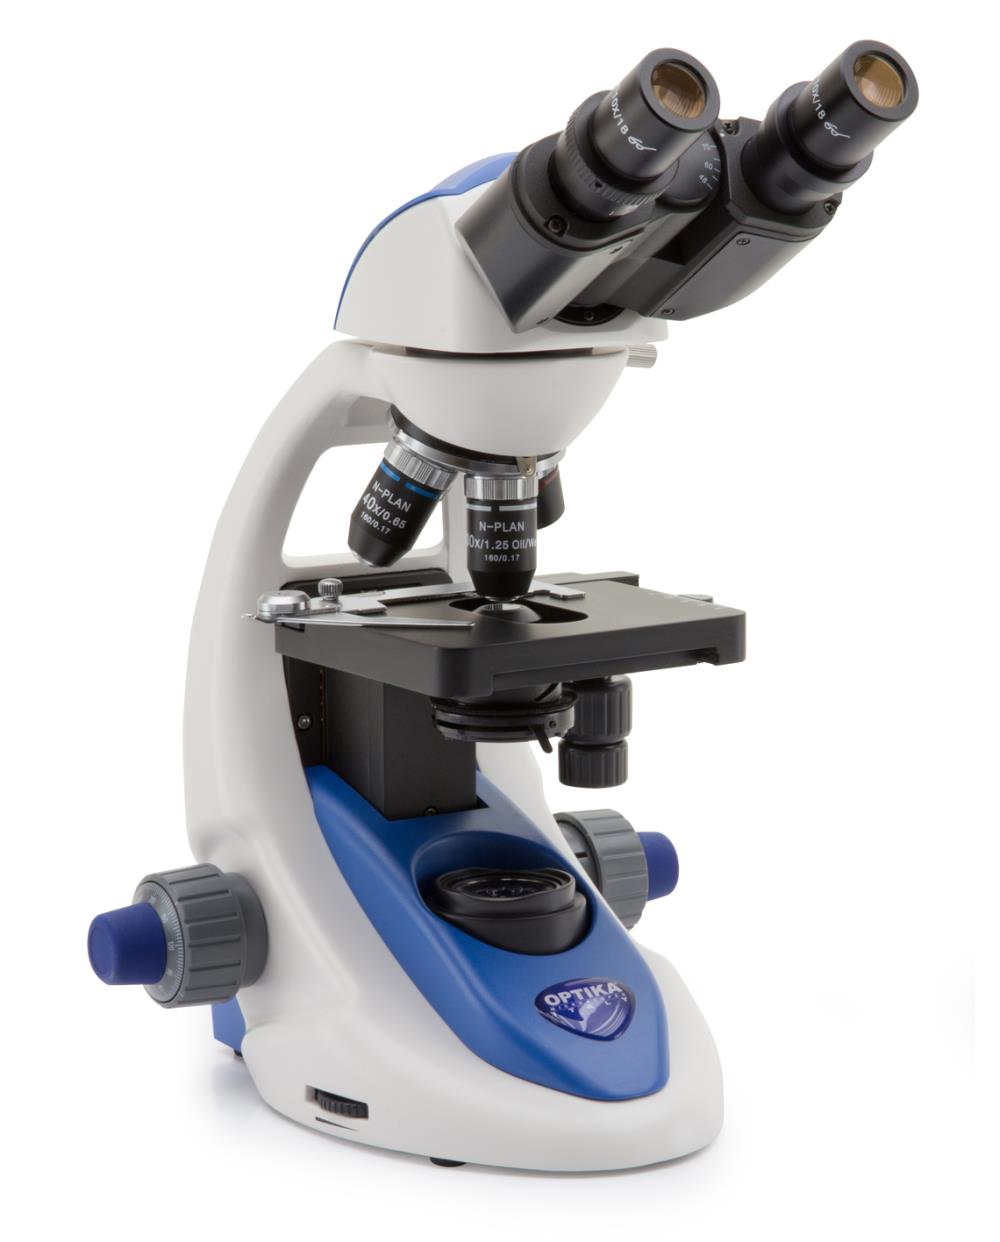 กล้องจุลทรรศน์ microscope Optika,microscope,กล้องจุลทรรศน์,trinocular microscope,stereo microscope,Optika,Energy and Environment/Environment Instrument